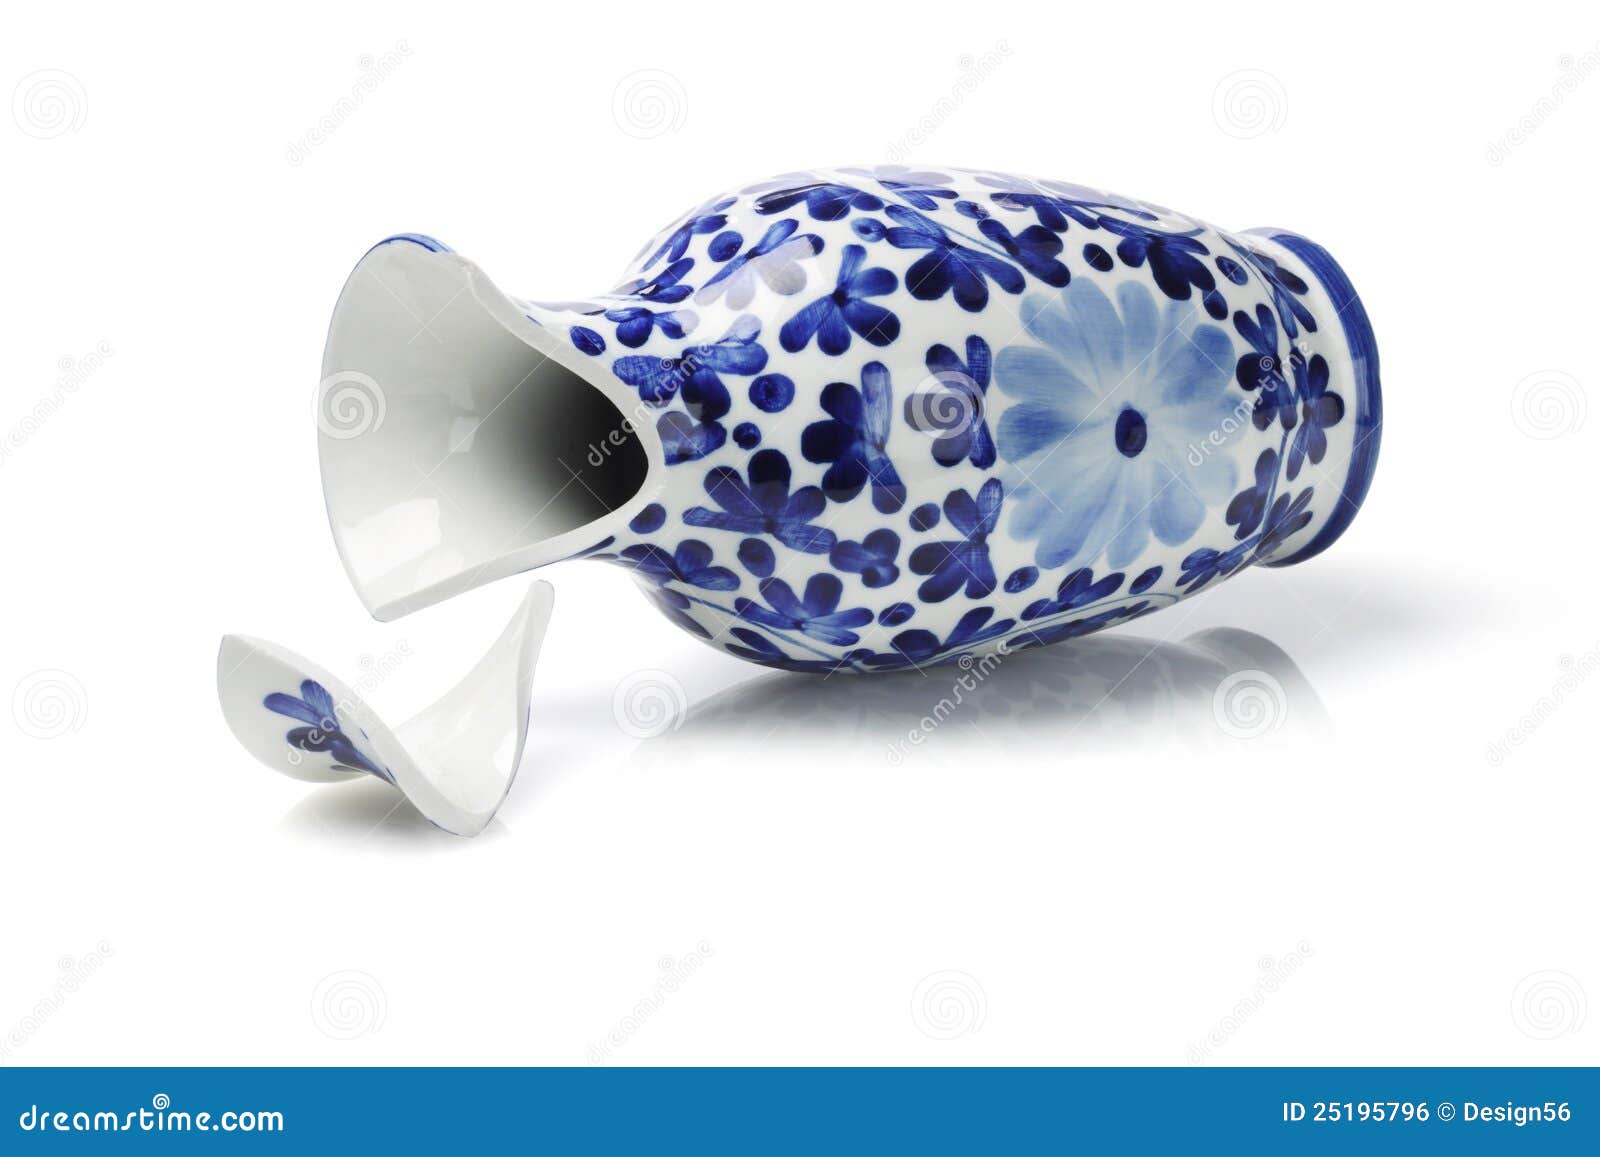 broken porcelain vase